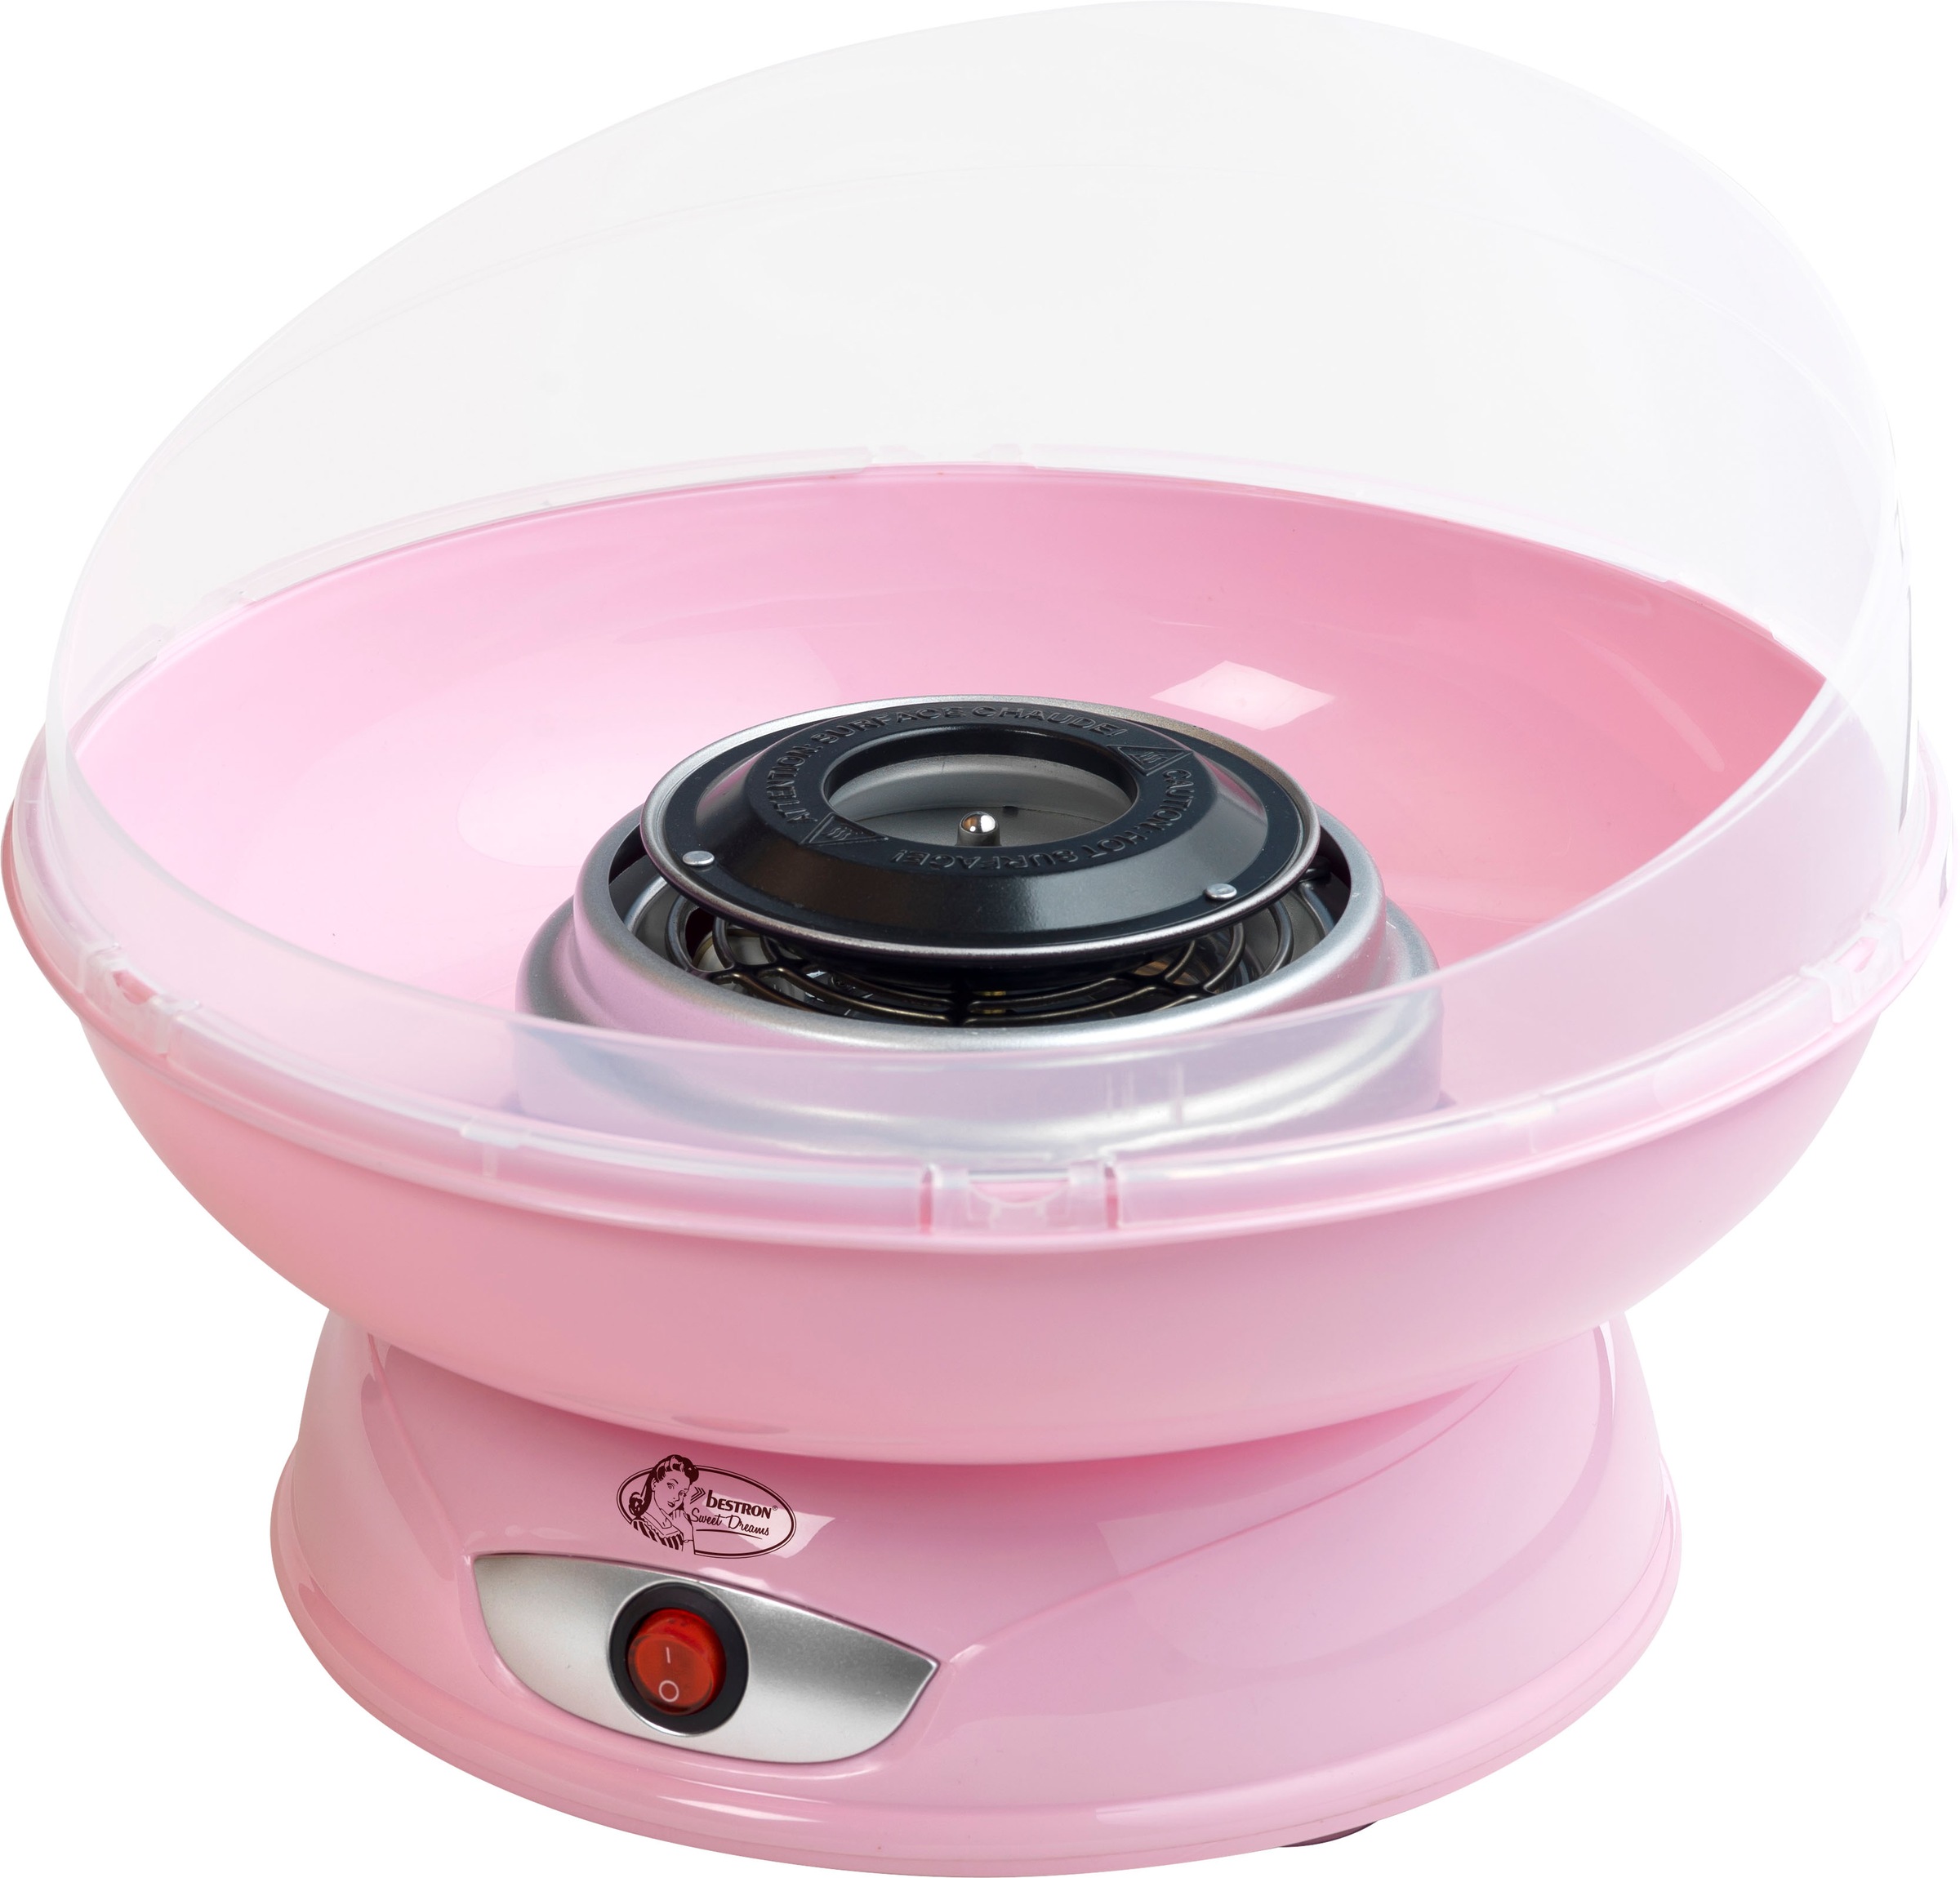 Retro Zuckerwattemaschine bestellen Watt, bei bestron »Sweet Dreams«, OTTO jetzt Rosa Design, 420 Farbe: im